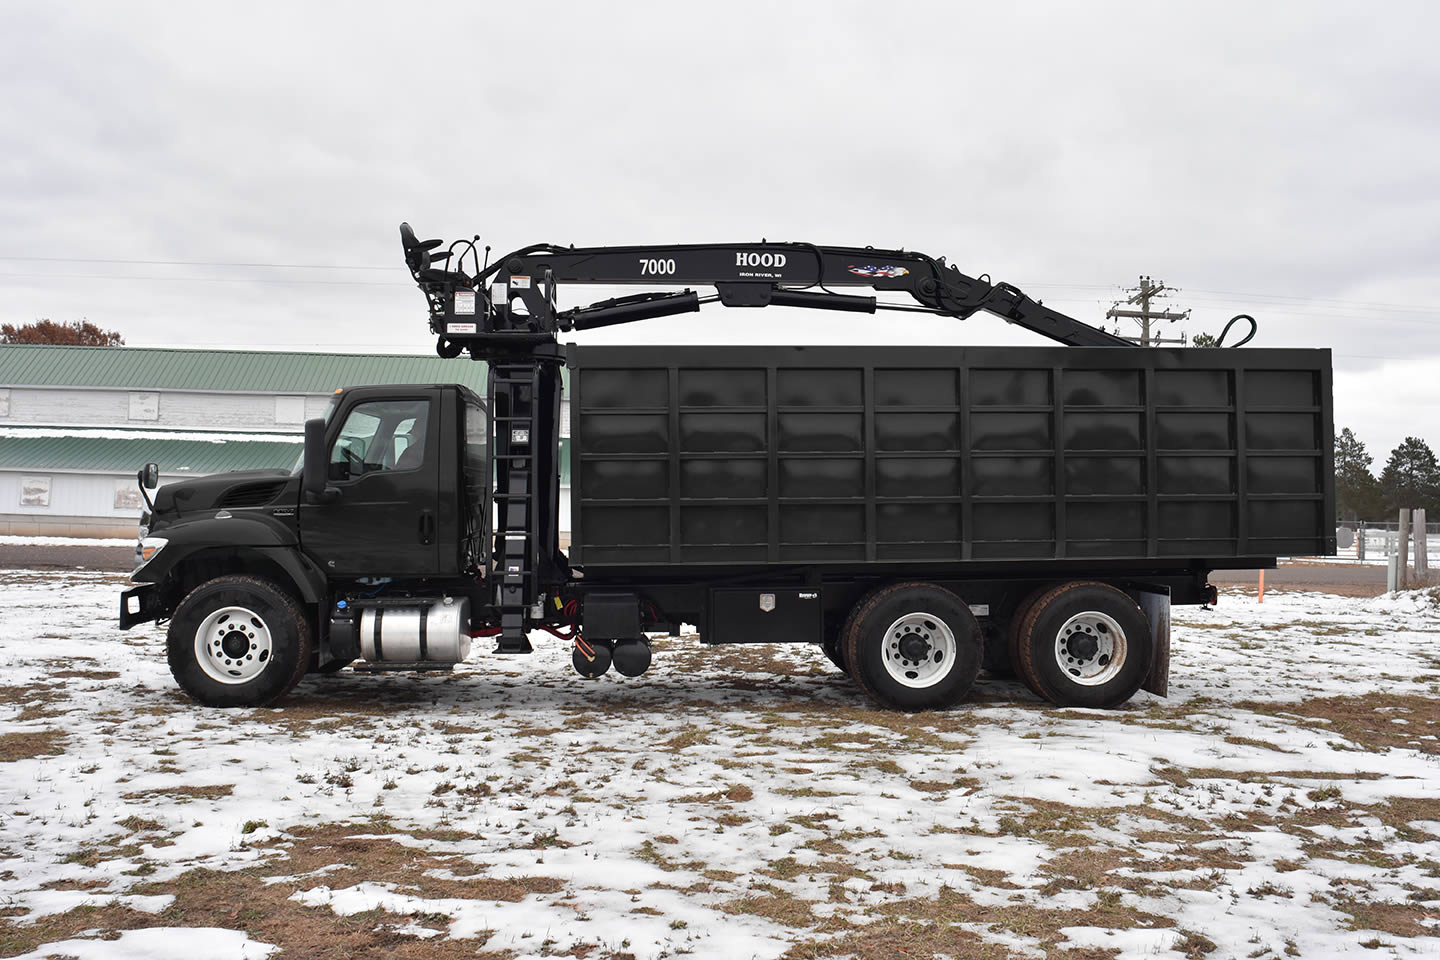 hood-loaders-truck-bed-side-view-black